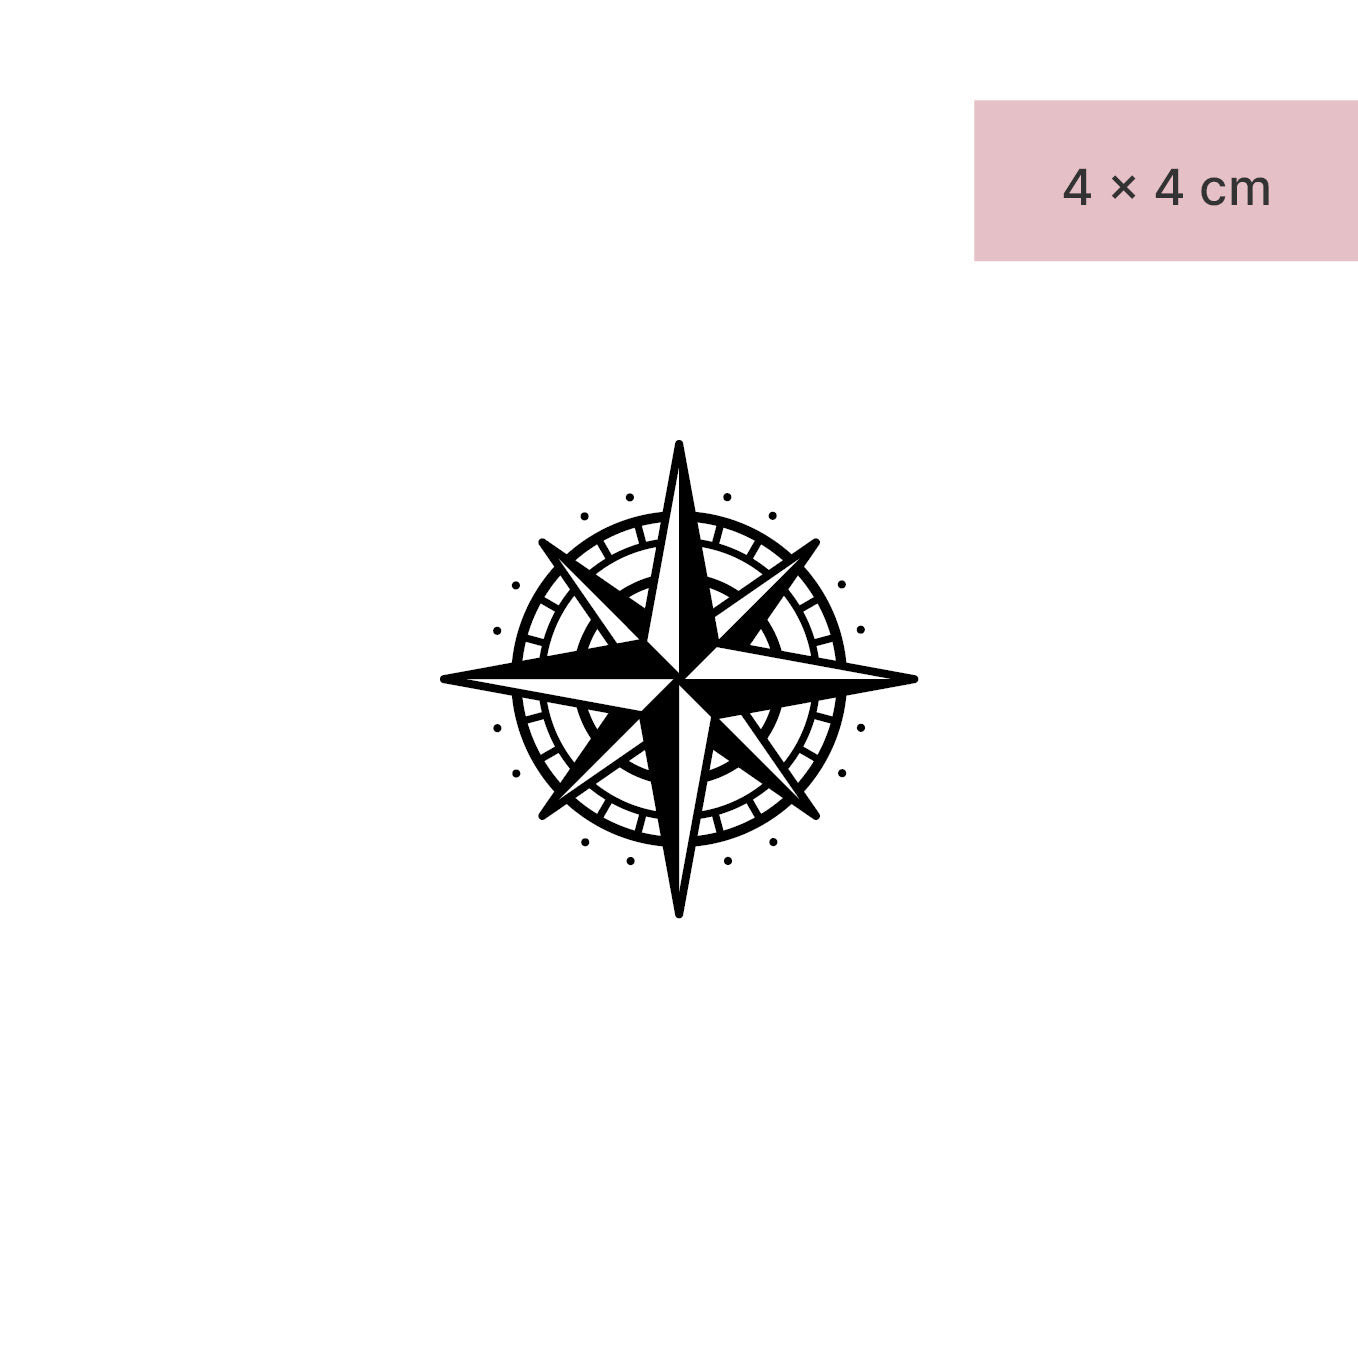 Klassischer Kompass Tattoo von minink, der Marke für temporäre Tattoos.